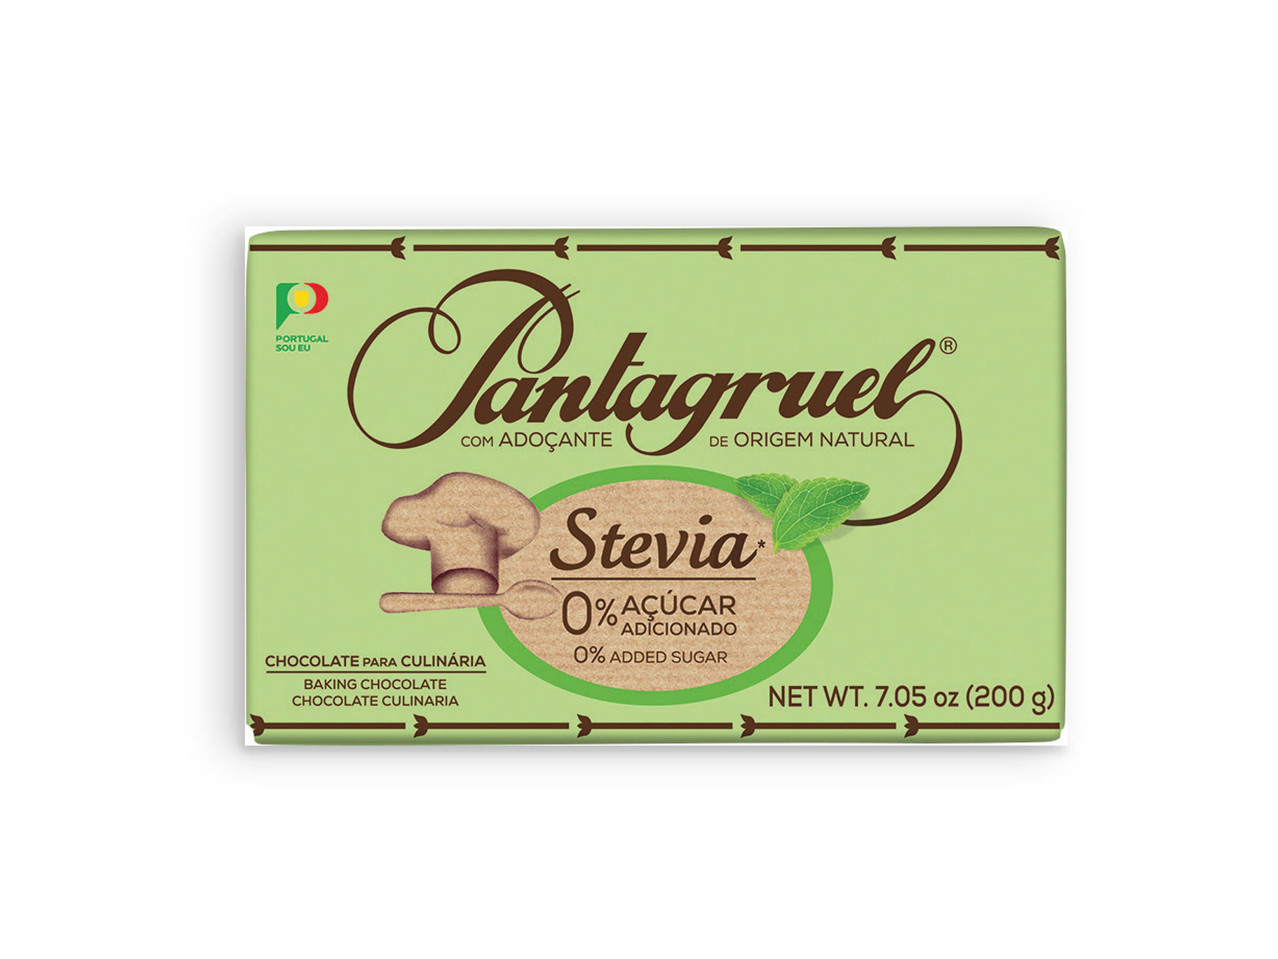 PANTAGRUEL(R) Chocolate Culinária com Stevia